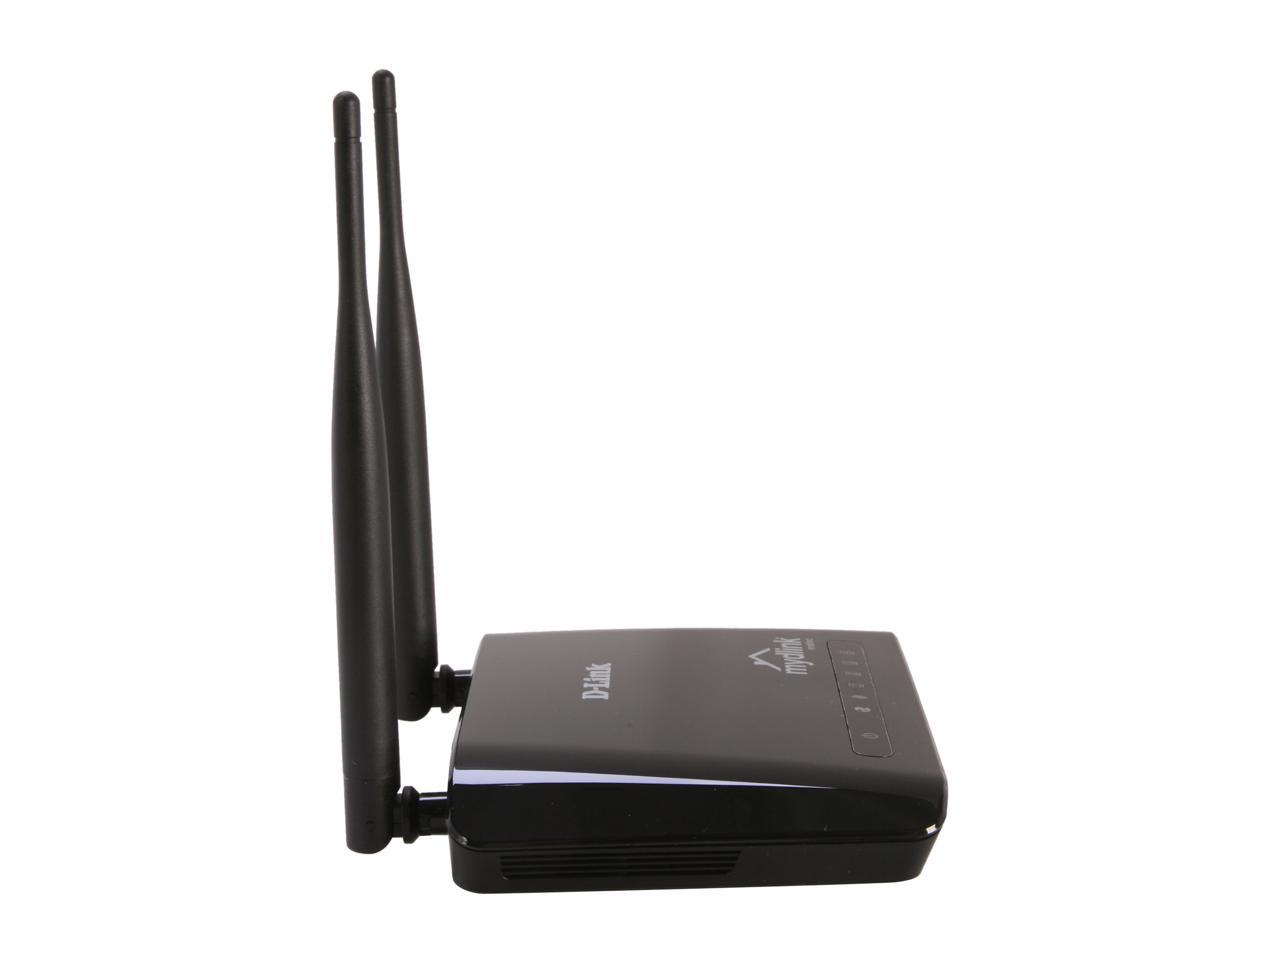 Wireless N 300 Home Cloud Router (DIR-605L/EEU)